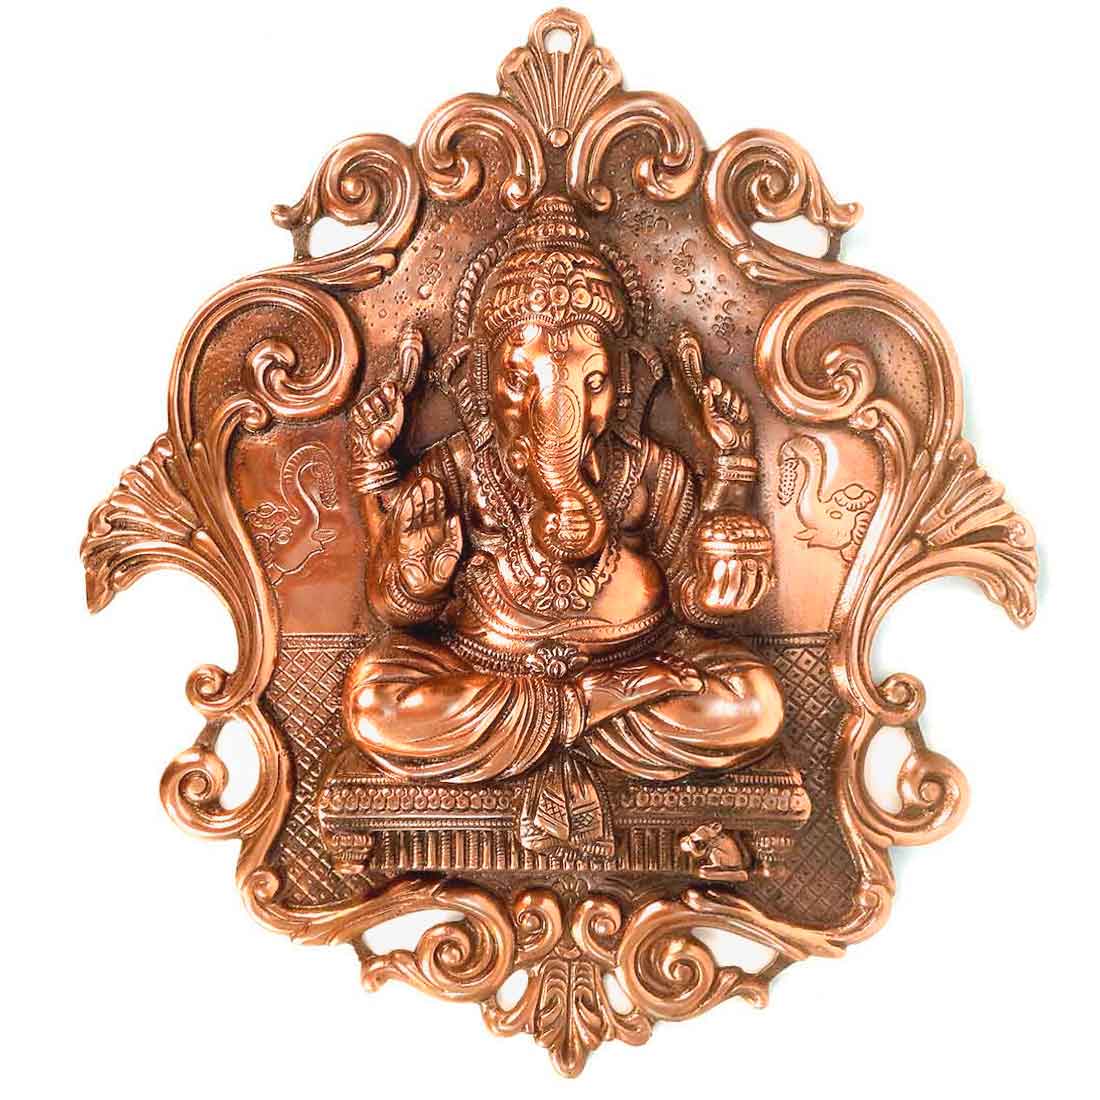 Ganesh Idol for Gift | Metal Wall Decor - 18 Inch - ApkaMart